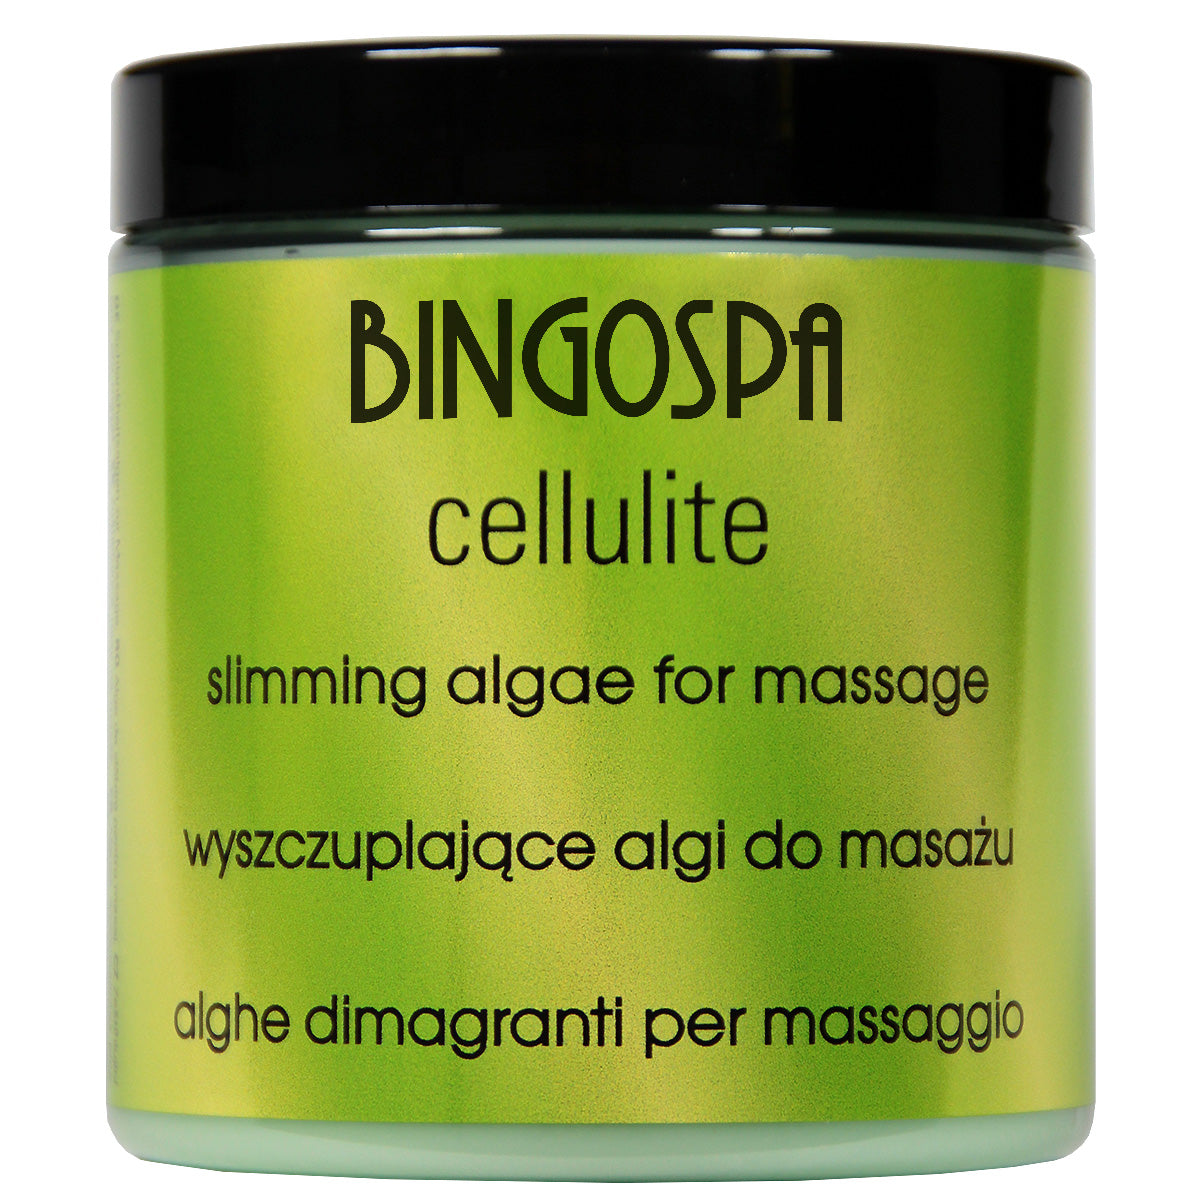 Wyszczuplające algi do masażu BINGOSPA cellulite